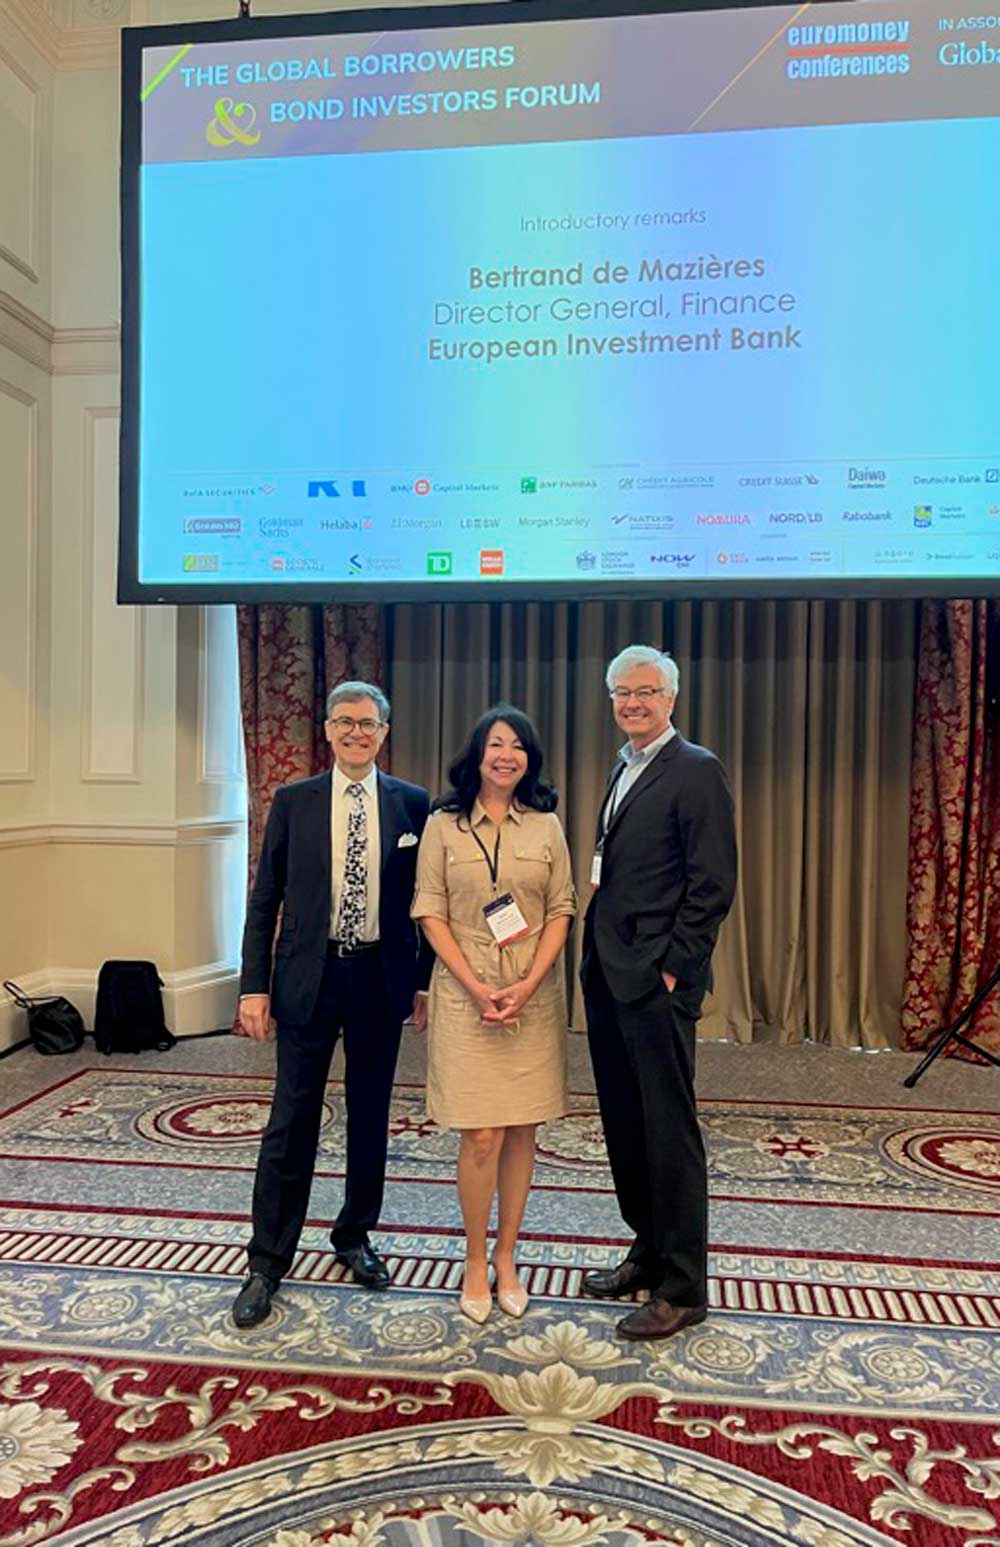 L-R; Bertrand de Mazières, Doris Herrera-Pol and Ken Lay at the The Global Borrowers and Bond Investors Forum in London, UK.